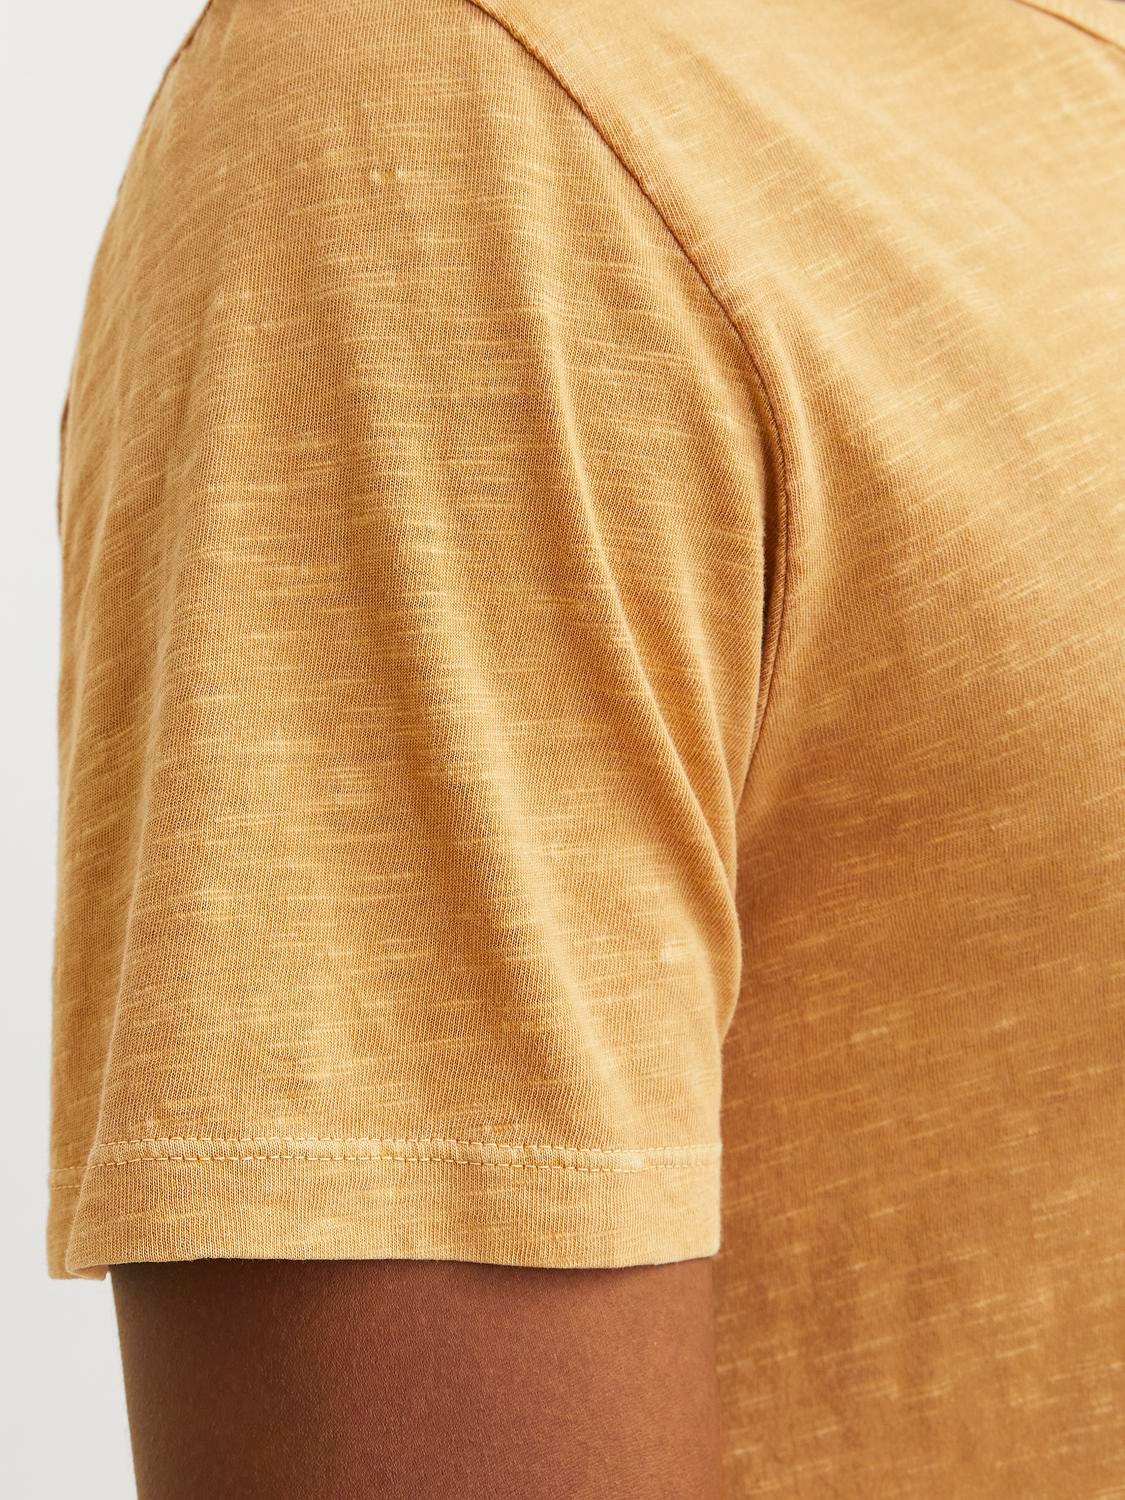 Jack & Jones Melert Splitthals T-skjorte -Honey Gold - 12164972